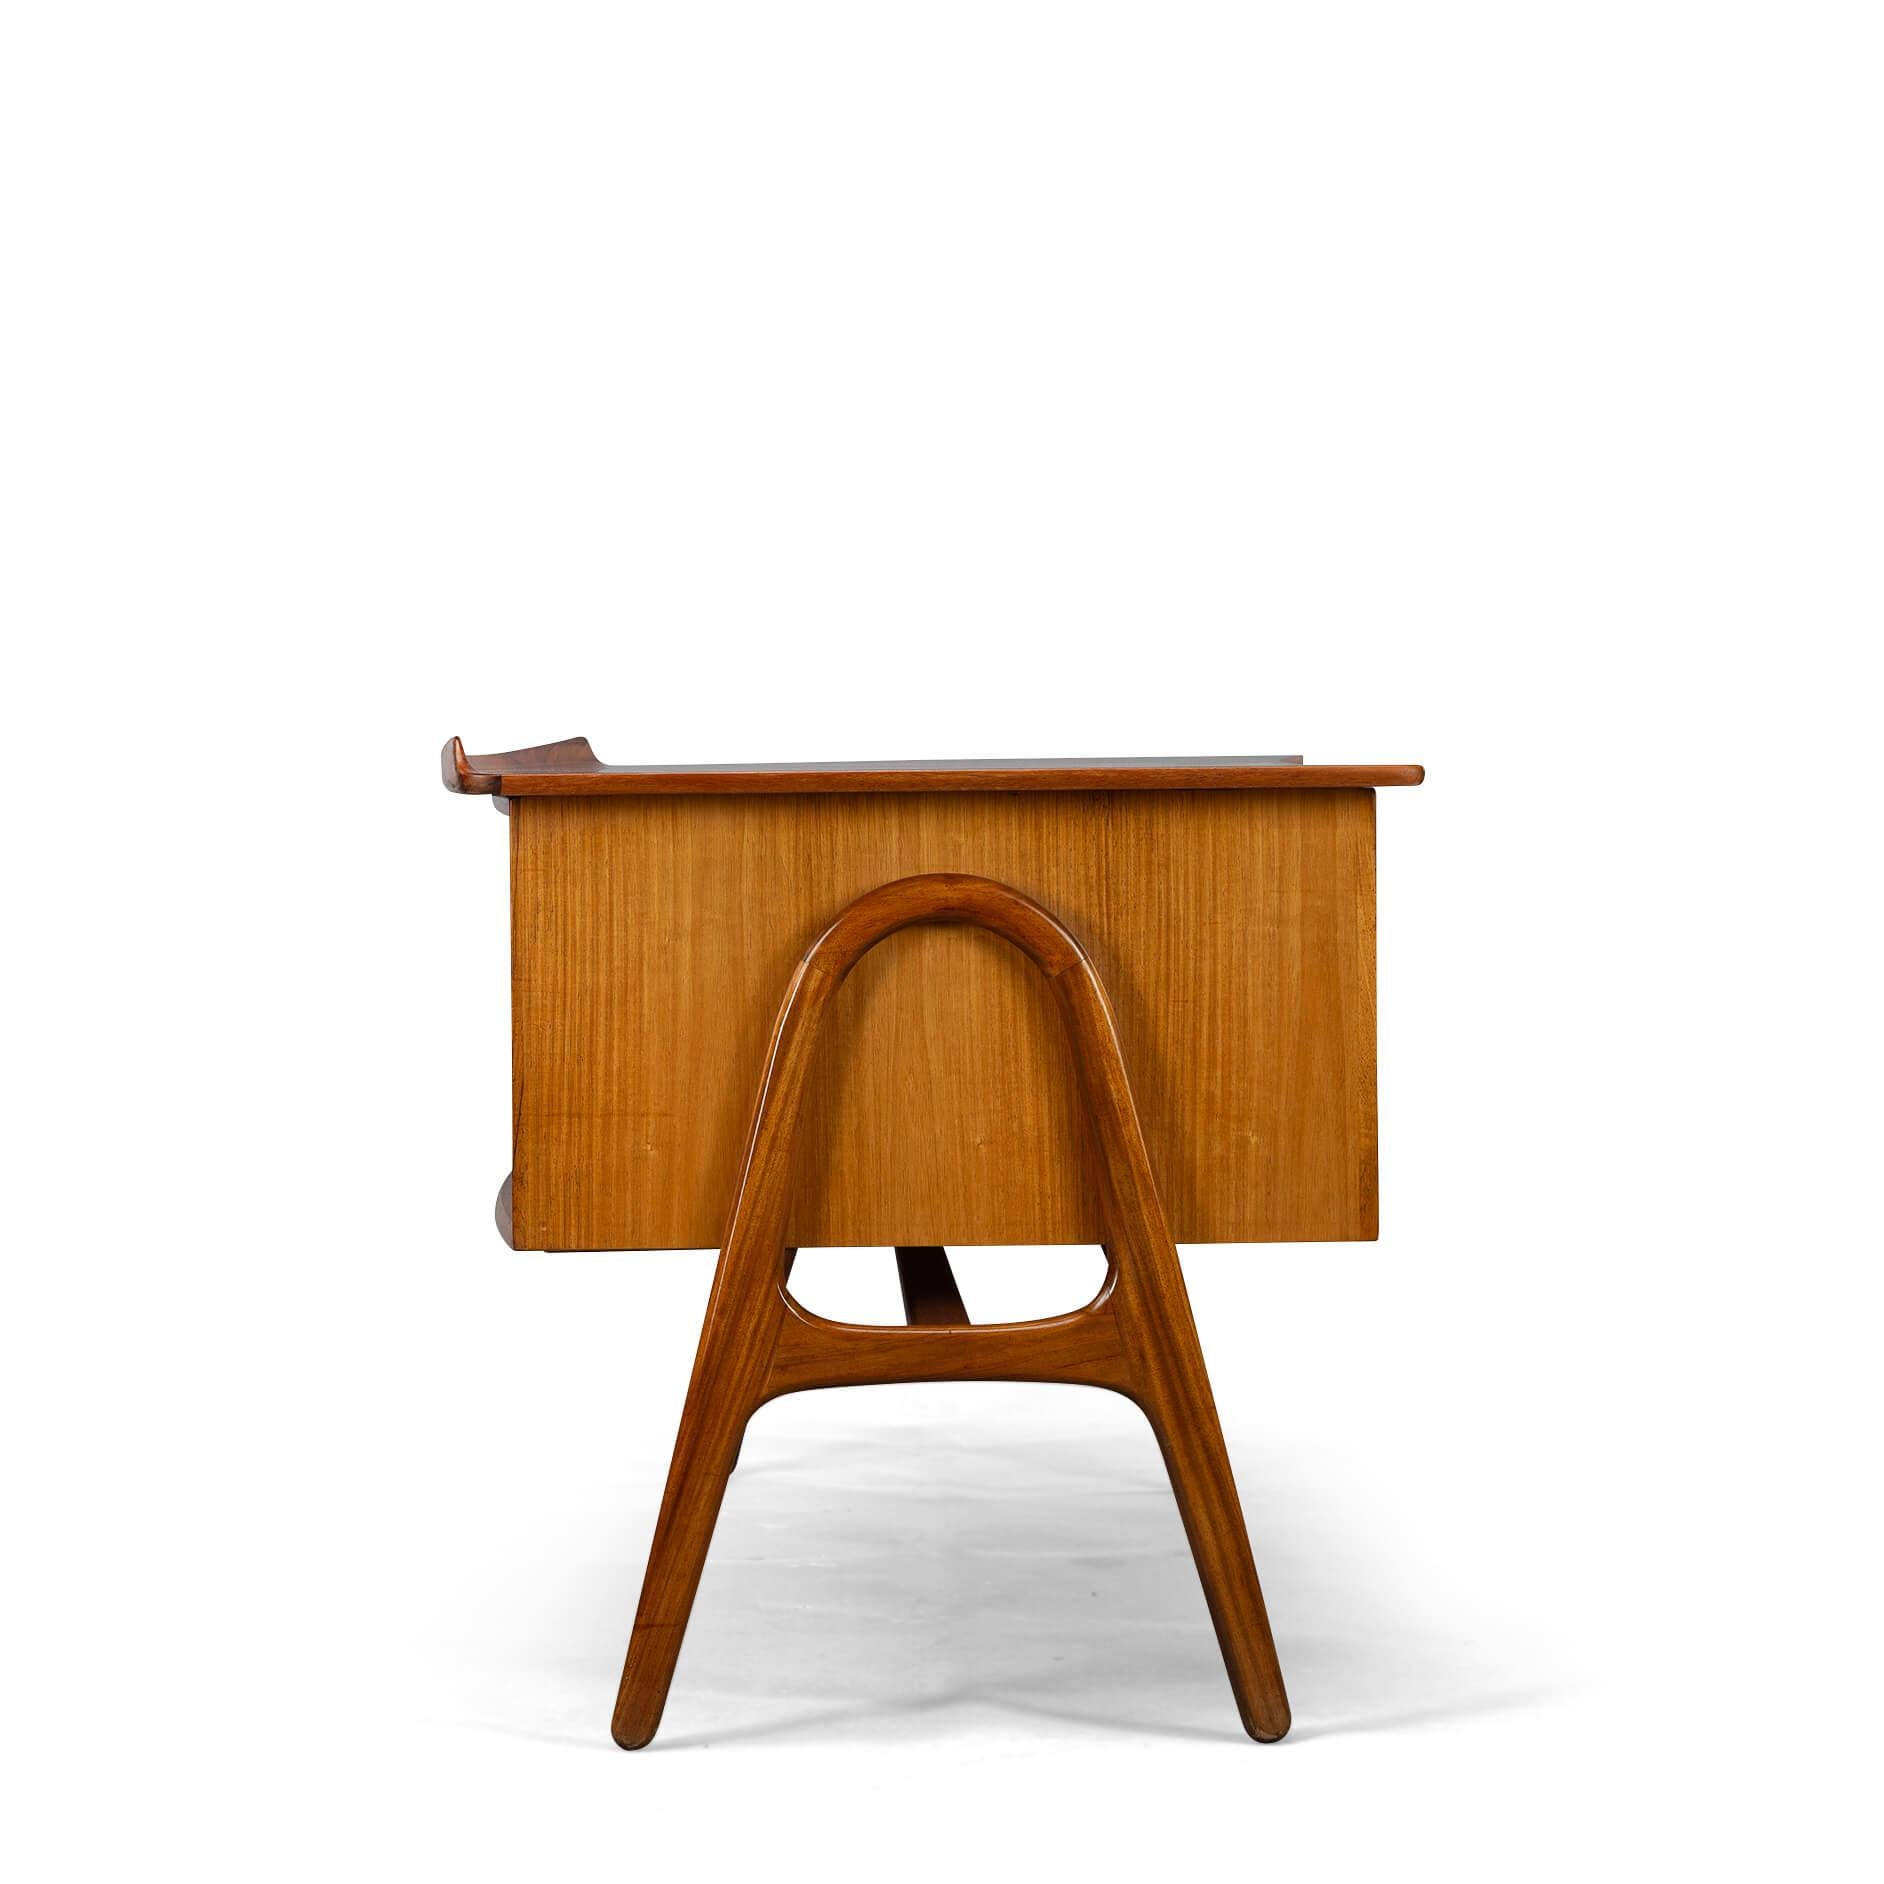 Design-Schreibtisch
Ein exklusiver großer Schreibtisch aus der Mitte des Jahrhunderts, entworfen von Svend Madsen und hergestellt von HP Hansen in Dänemark in den 1960er Jahren. Dieser elegante Schreibtisch zeichnet sich durch eine gewölbte, große